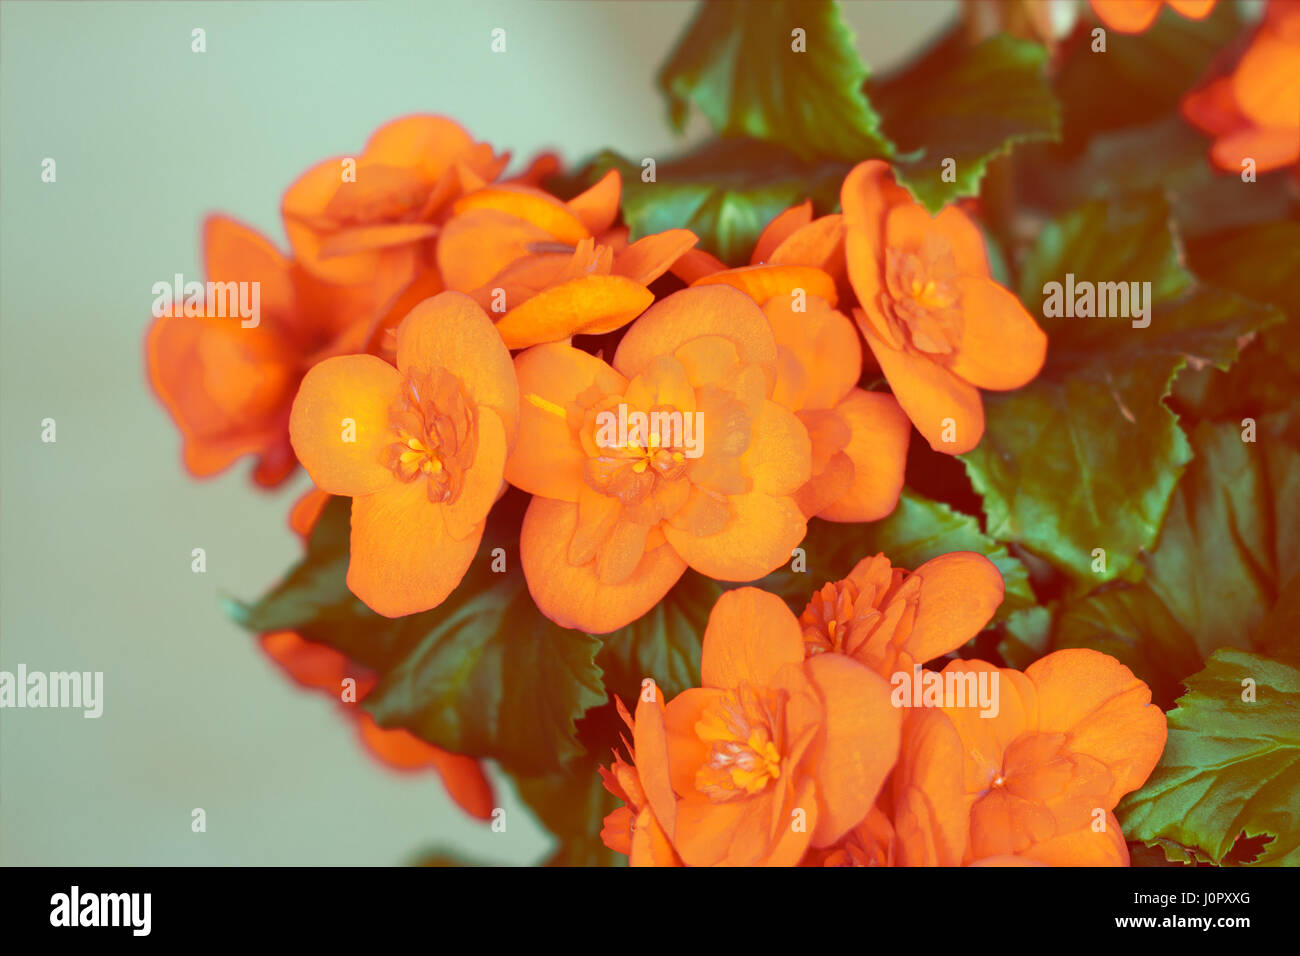 Orange begonia flower on blue background Stock Photo